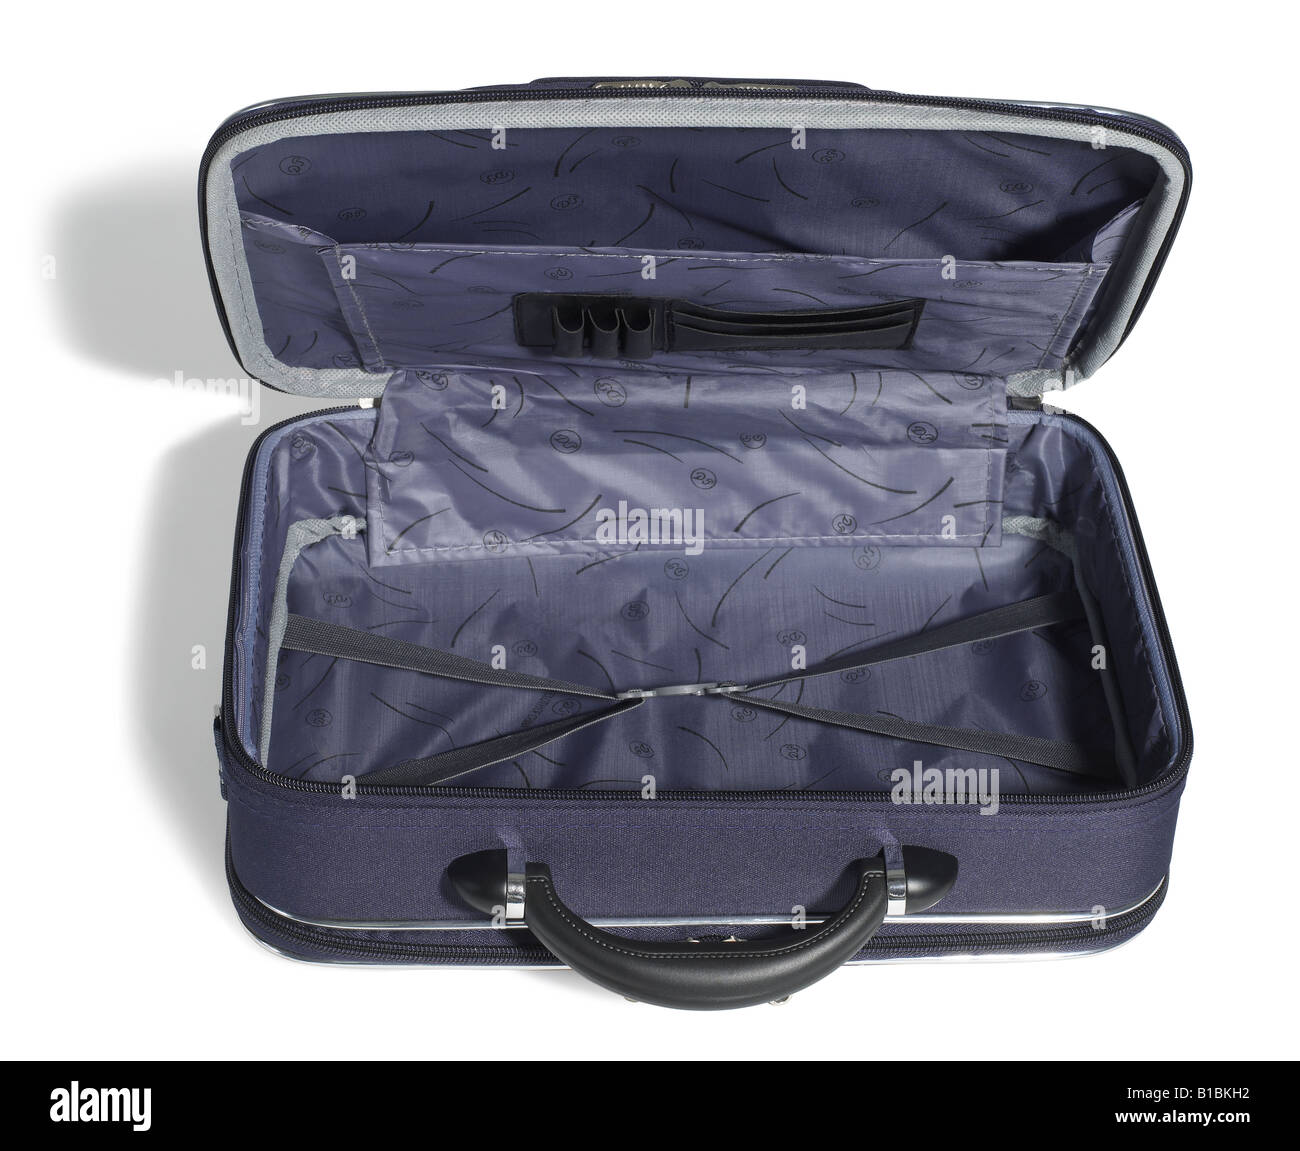 Valise bleue les bagages de voyage sac de voyage valise sac sac sac ouvert vol Banque D'Images